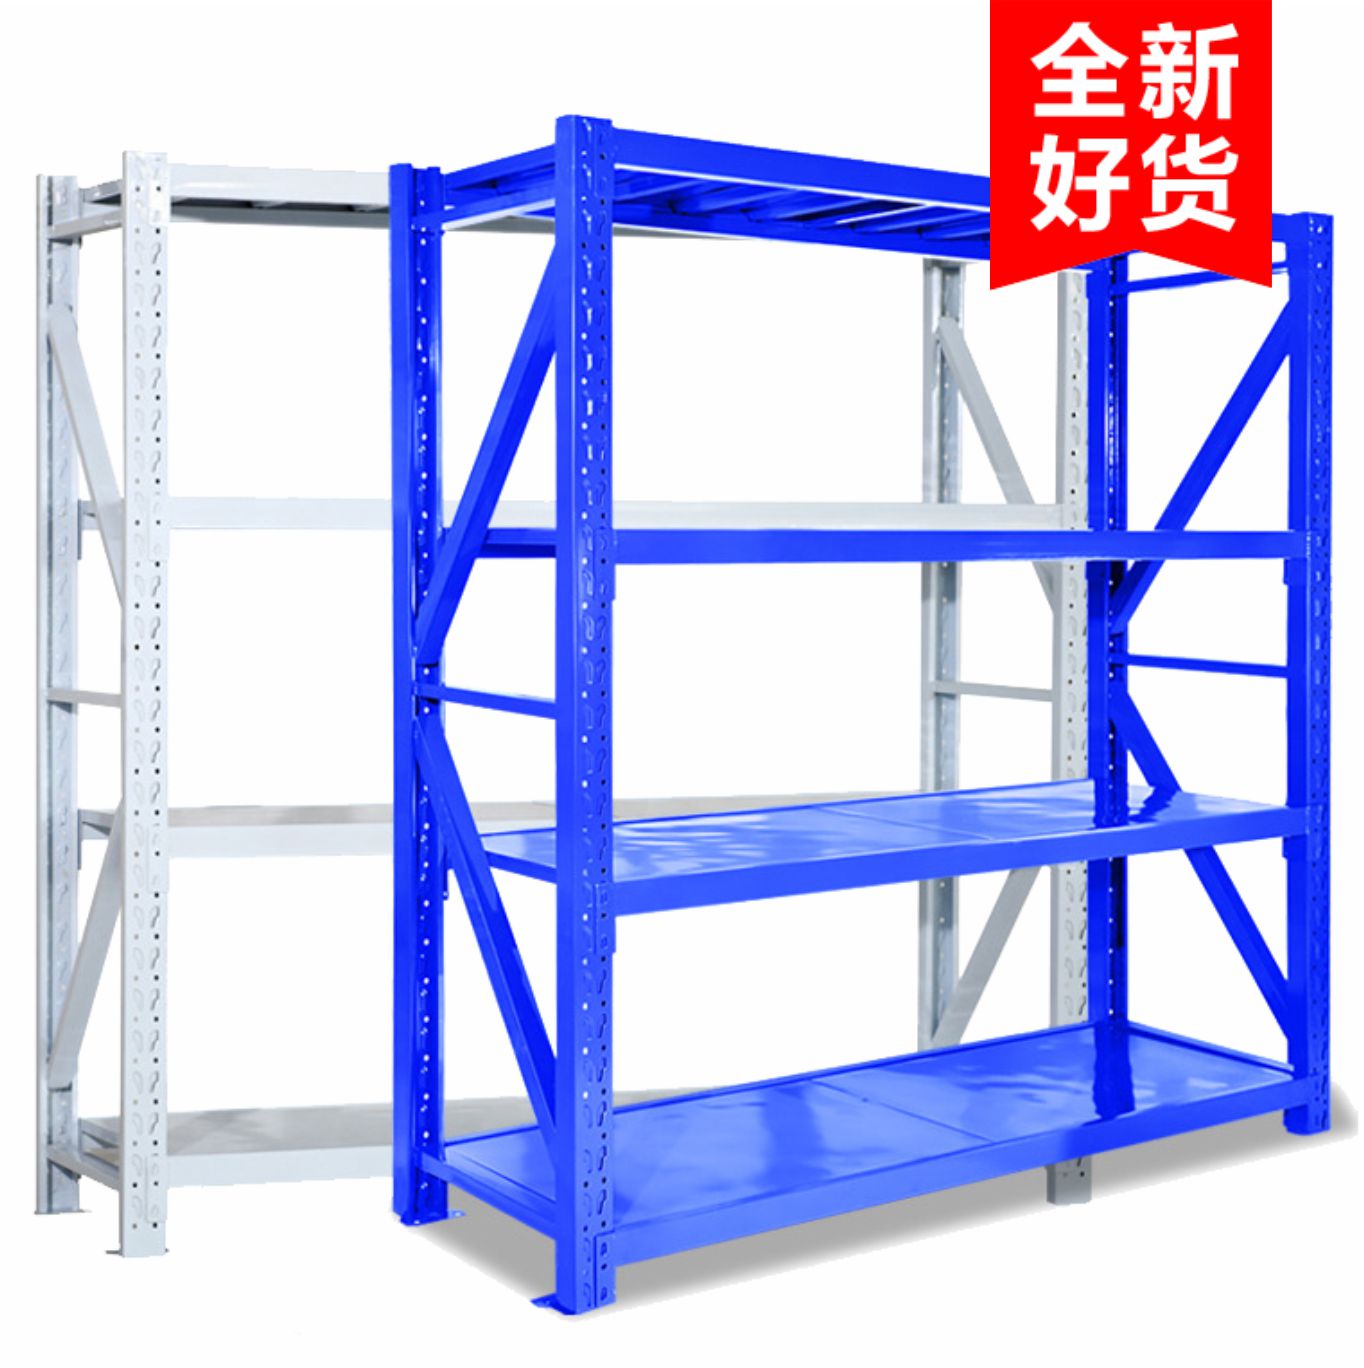 轻型层板货架主要由立柱、横斜撑、横梁、层板等部分组成，标准插接式组合结构，外观简洁，连接牢固